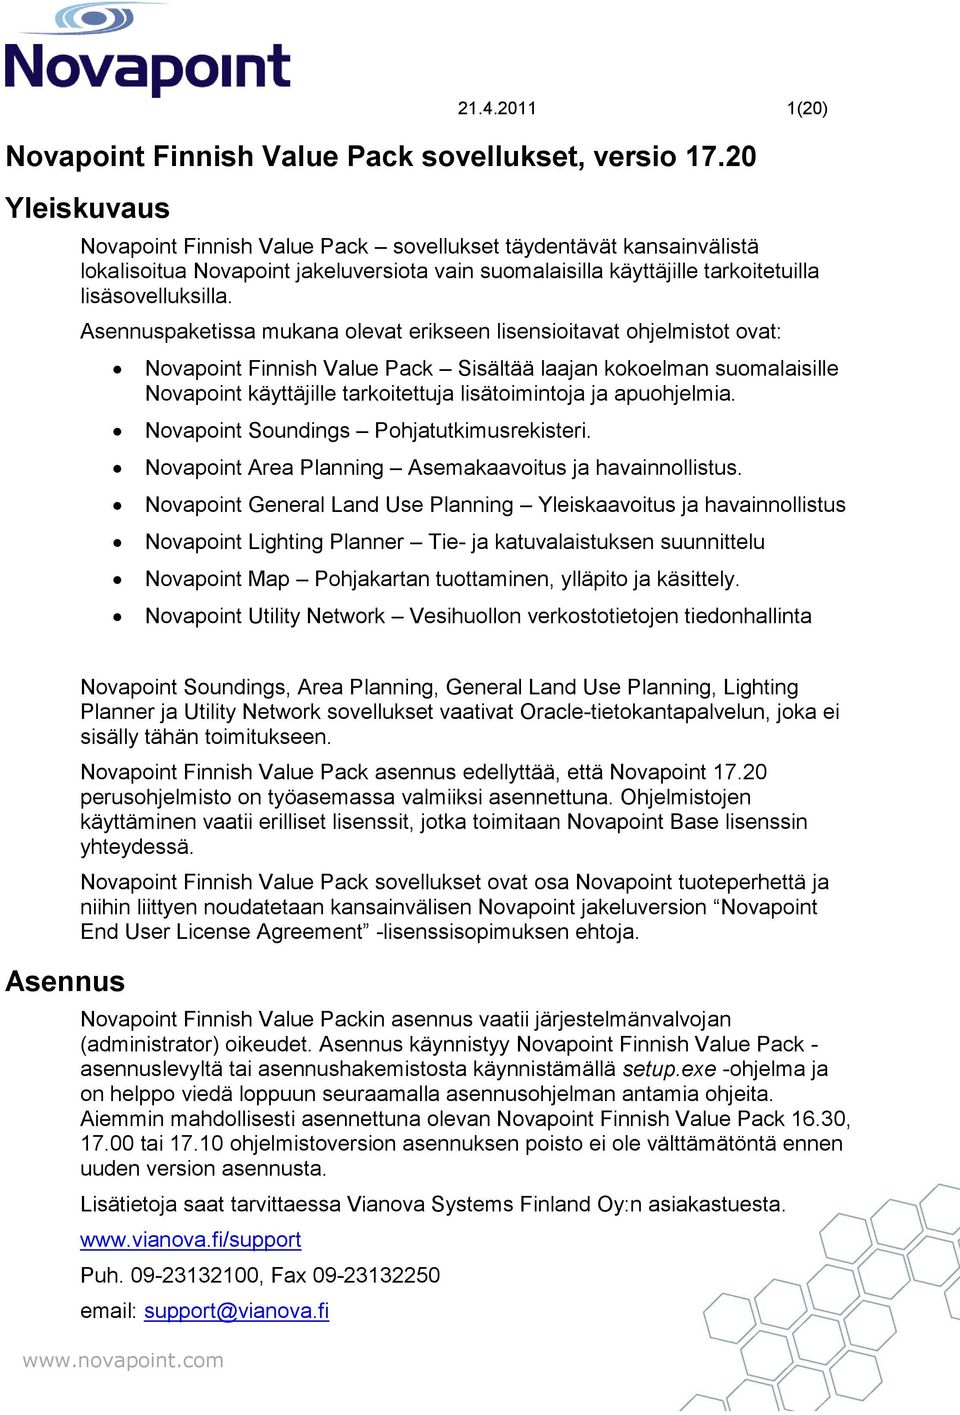 Asennuspaketissa mukana olevat erikseen lisensioitavat ohjelmistot ovat: Novapoint Sisältää laajan kokoelman suomalaisille Novapoint käyttäjille tarkoitettuja lisätoimintoja ja apuohjelmia.